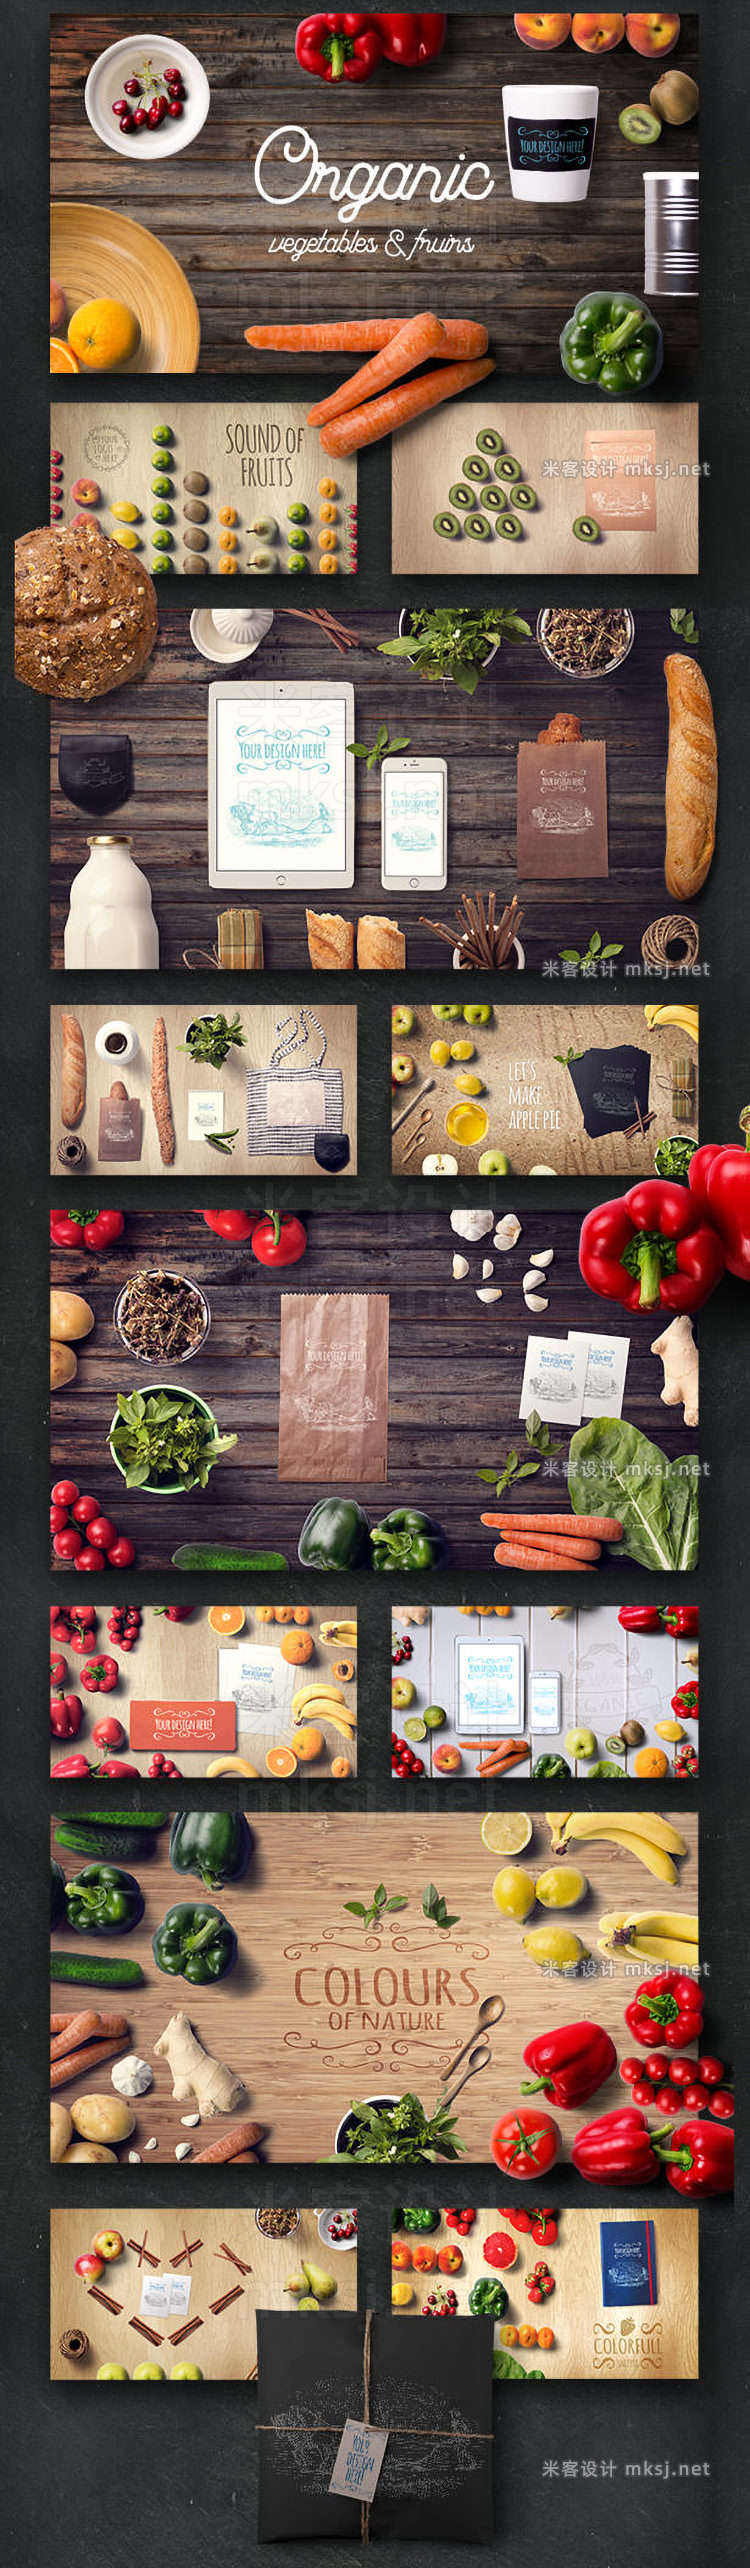 有机食品样机厨房实物蔬菜水果场景设计photoshop素材